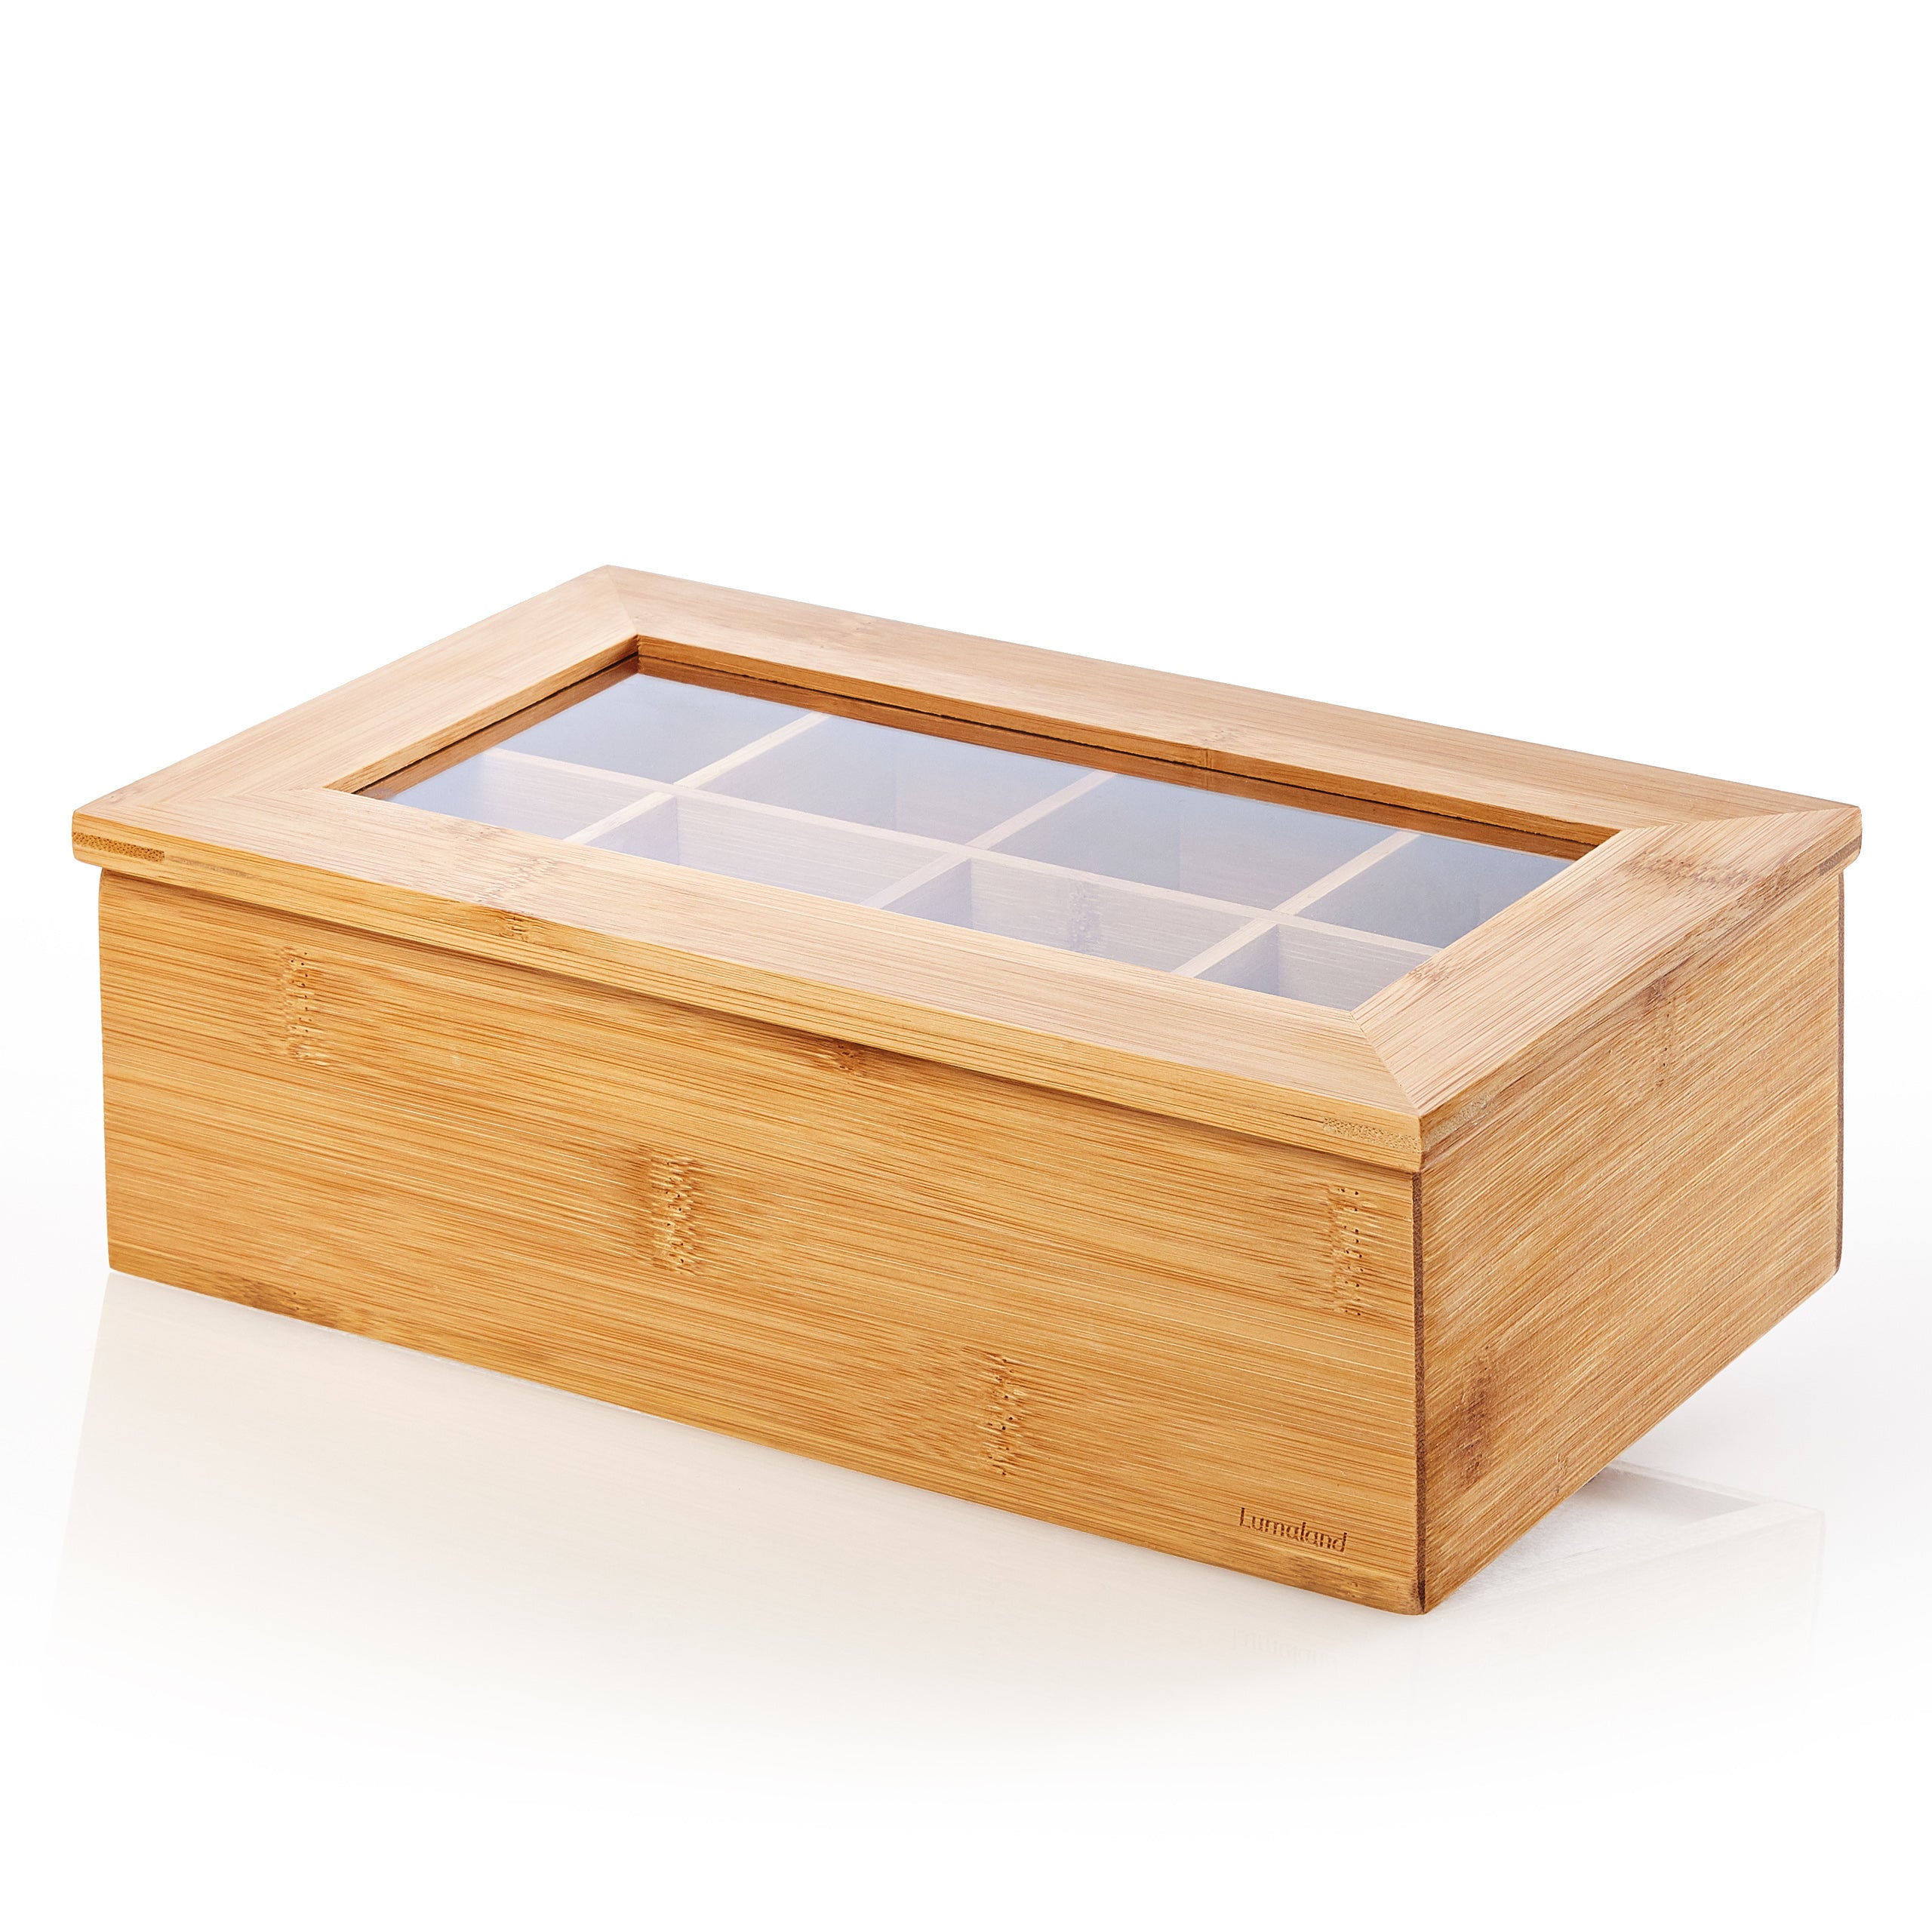 Cuisine Teebox - Mit aufklappbarem Deckel & Sichtfenster - Bambusholz